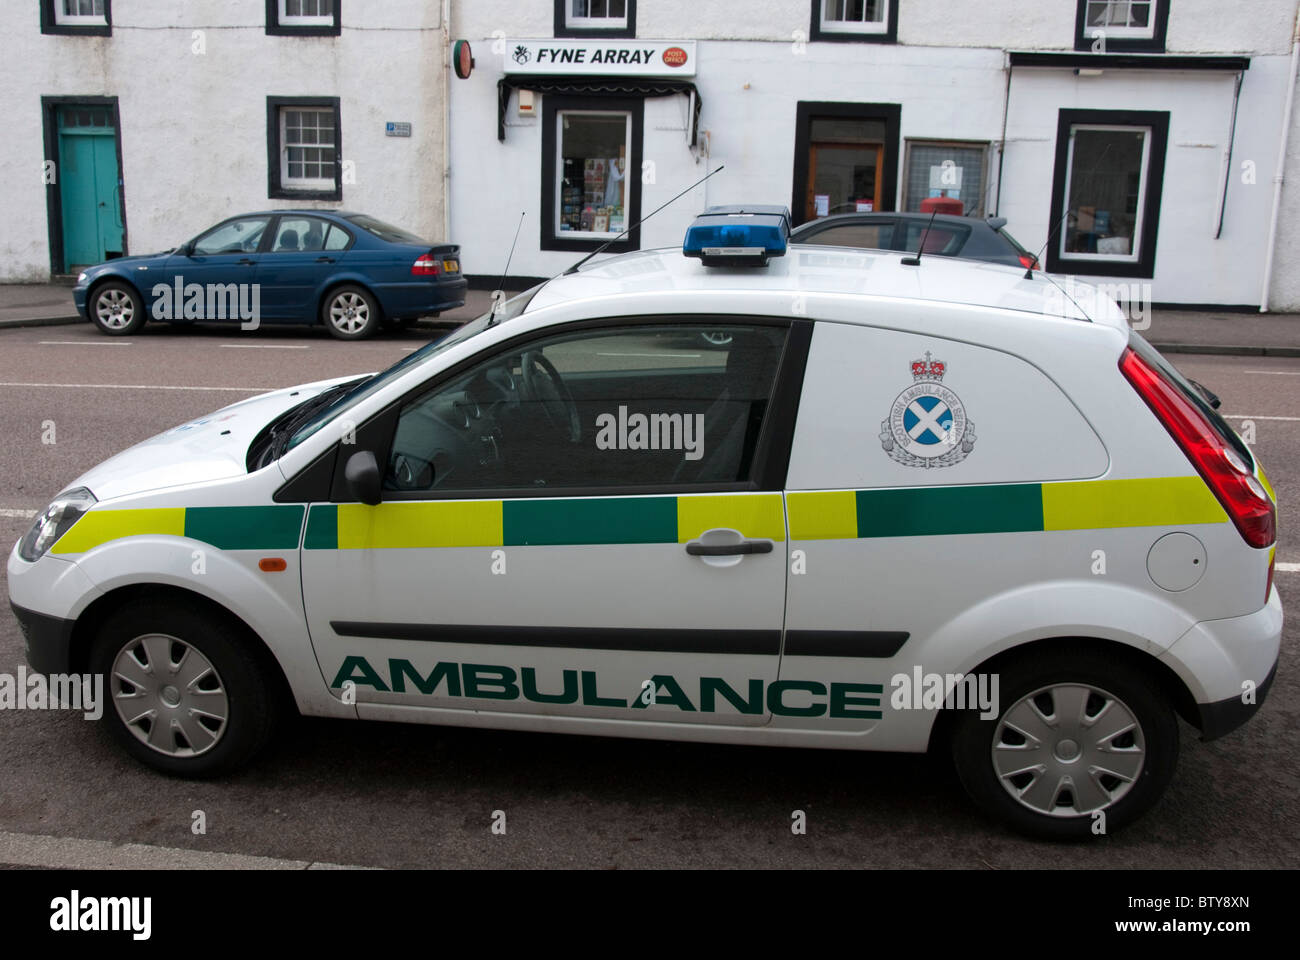 Scottish Ambulance Service Liveried Ford Fiesta Van Ambulance Vehicle Stock Photo